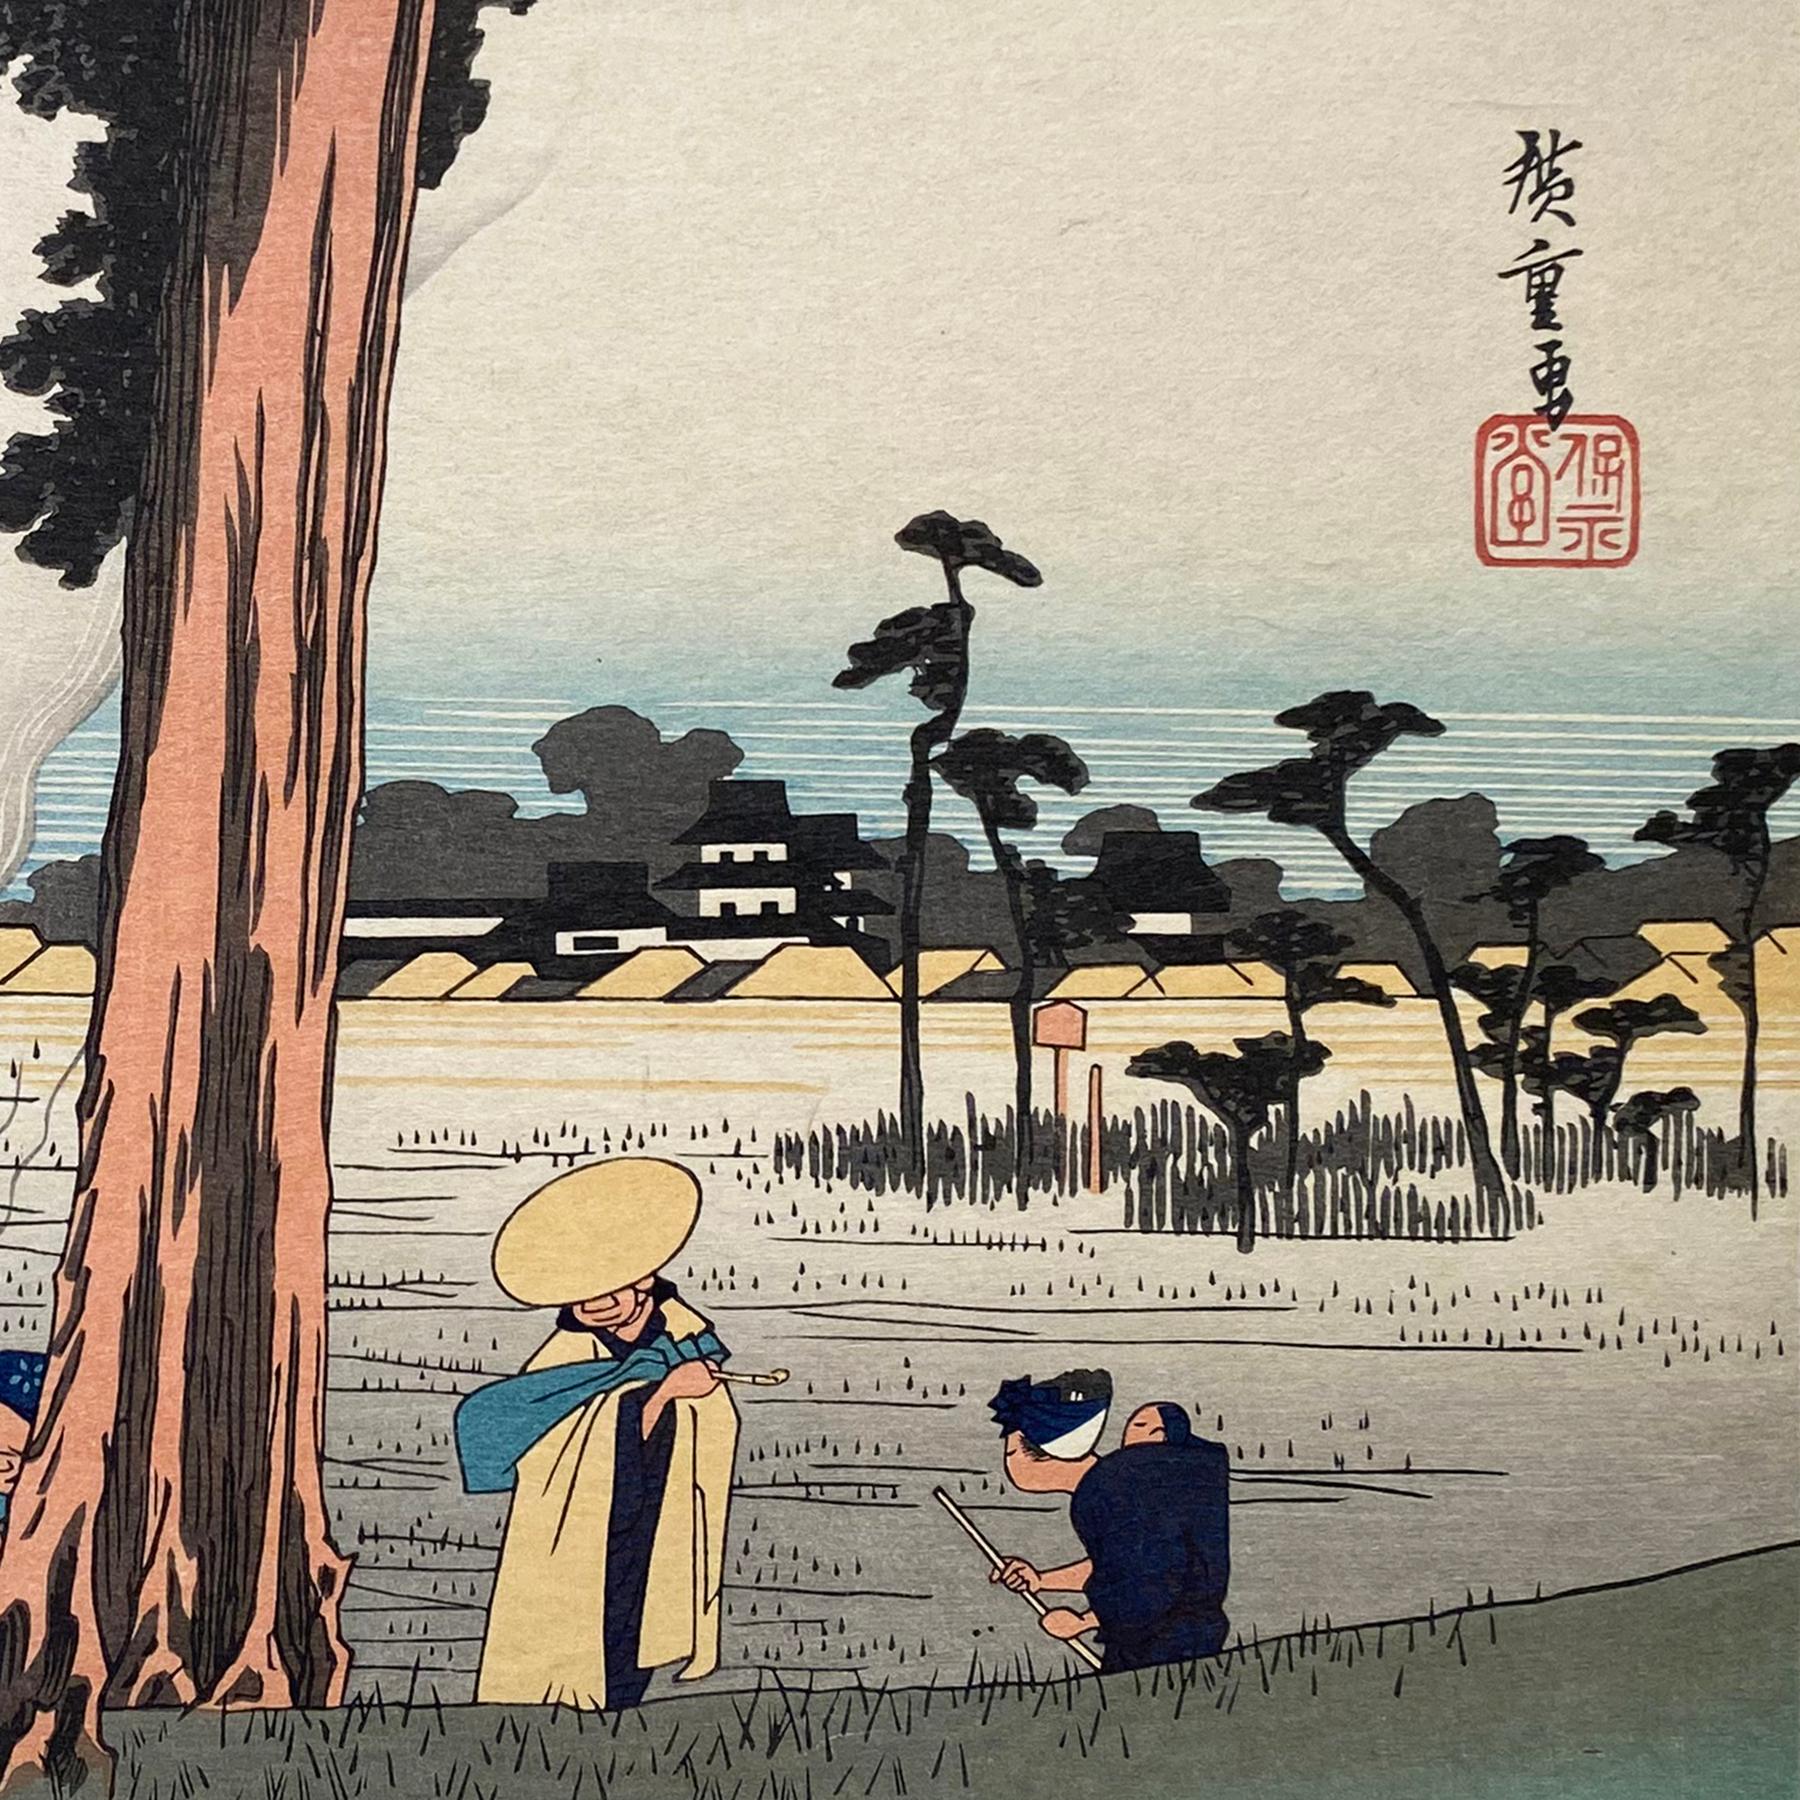 'View of Hamamatsu', After Utagawa Hiroshige 歌川廣重, Ukiyo-e Woodblock, Tokaido - Print by Utagawa Hiroshige (Ando Hiroshige)